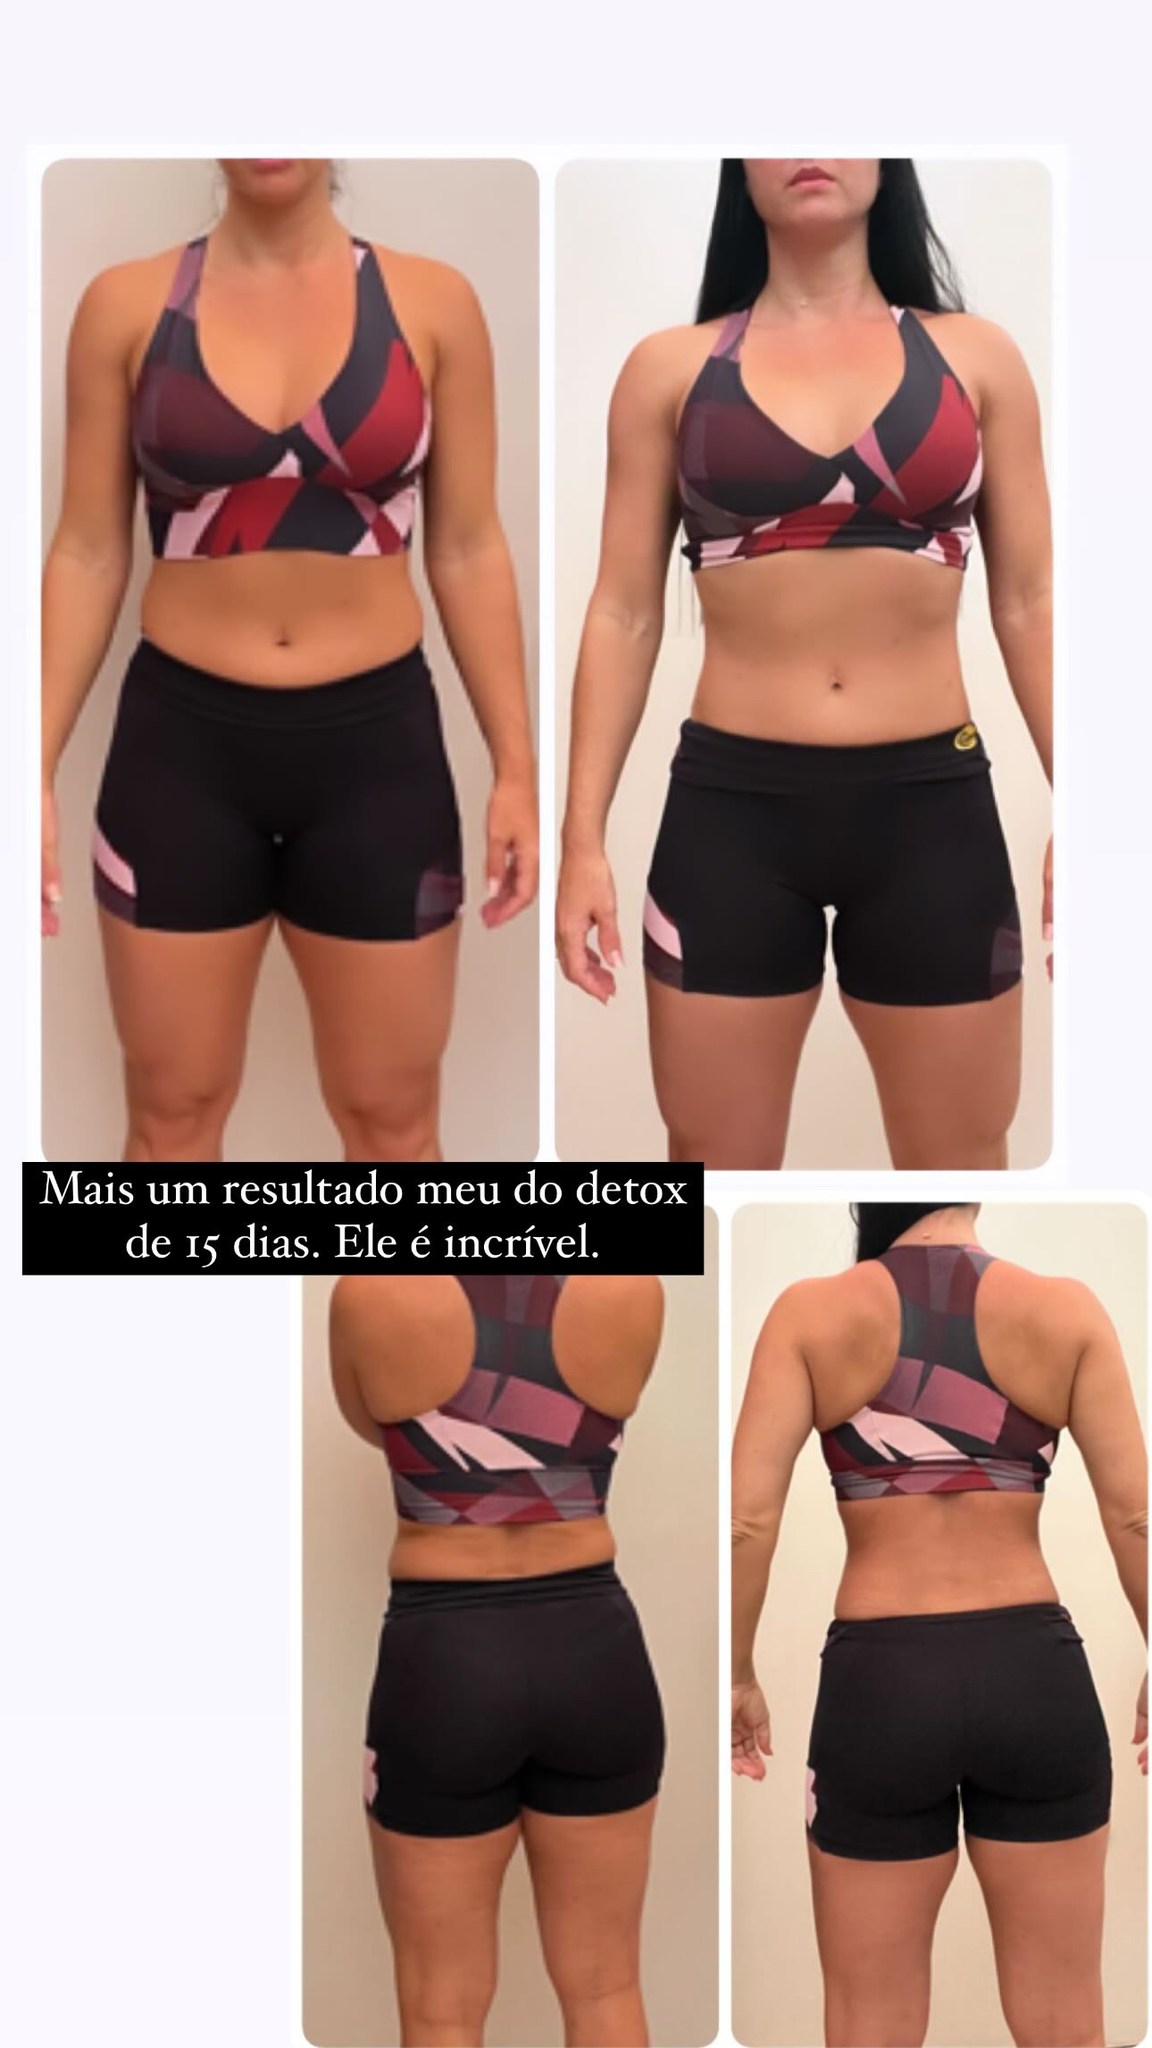 Graciele Lacerda mostrou antes e depois de detox de 15 dias - Foto: Foto: Reprodução/ Instagram@gracielelacerdaoficial